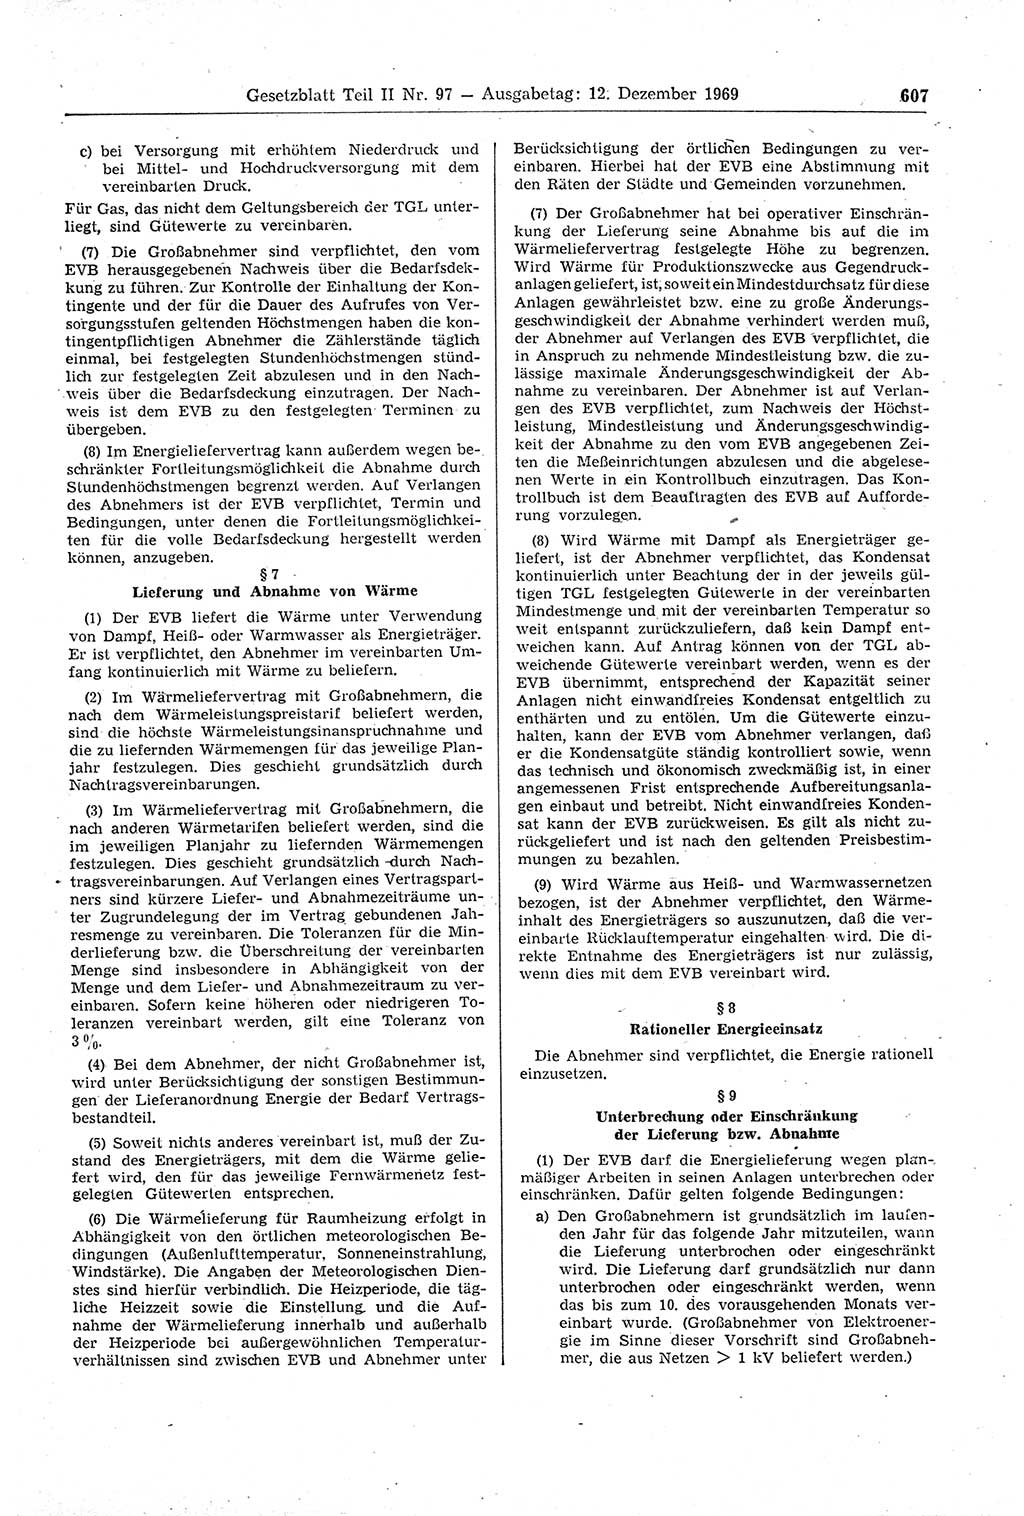 Gesetzblatt (GBl.) der Deutschen Demokratischen Republik (DDR) Teil ⅠⅠ 1969, Seite 607 (GBl. DDR ⅠⅠ 1969, S. 607)